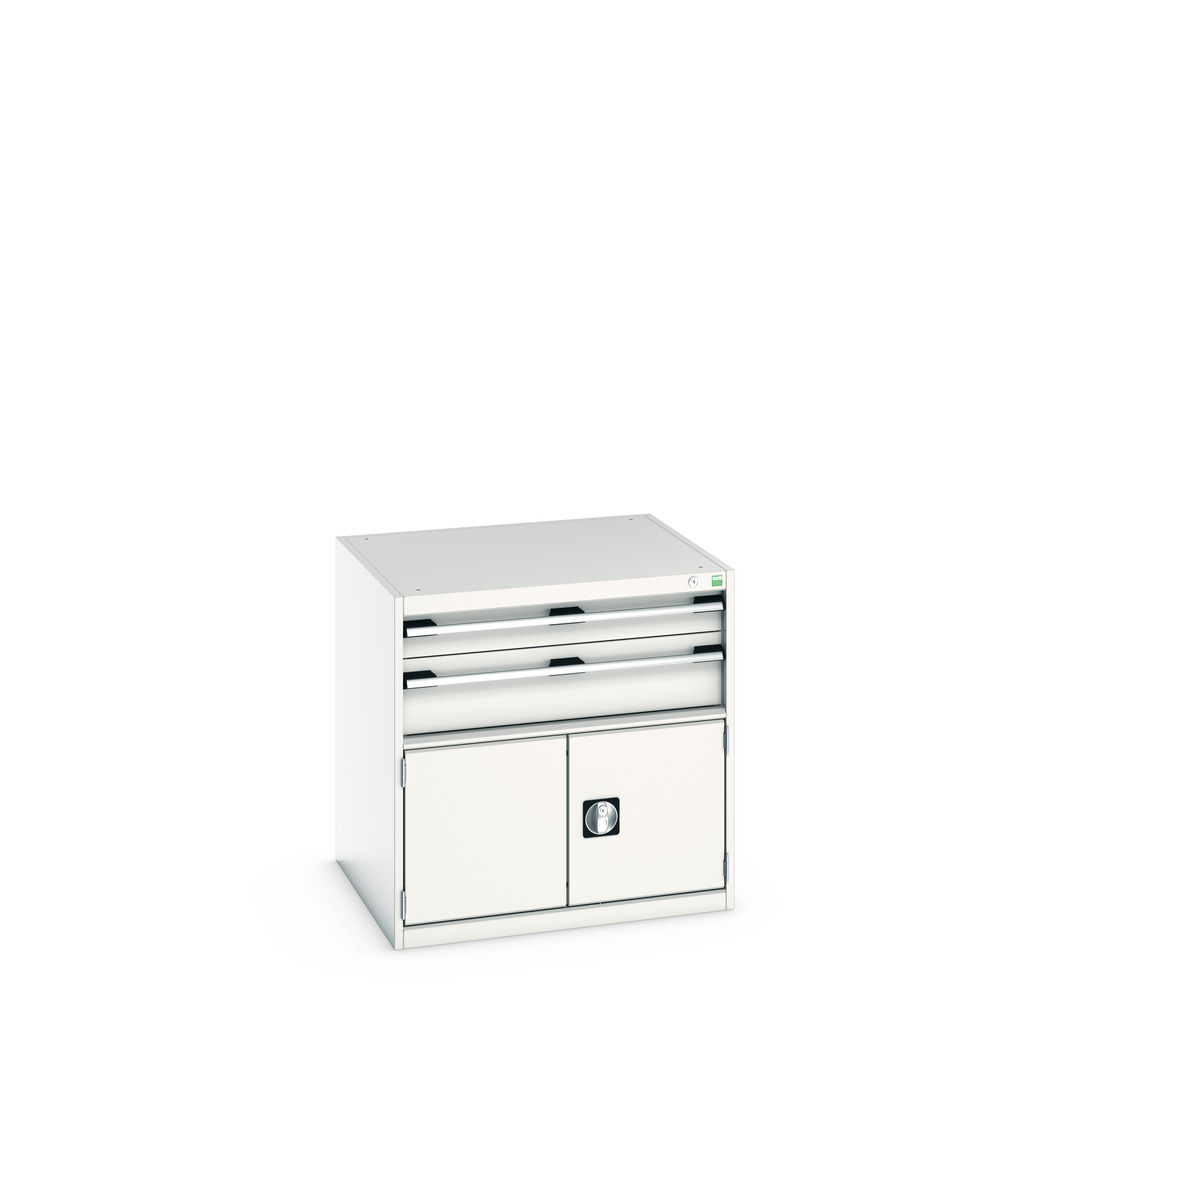 40028098.16V - cubio drawer-door cabinet